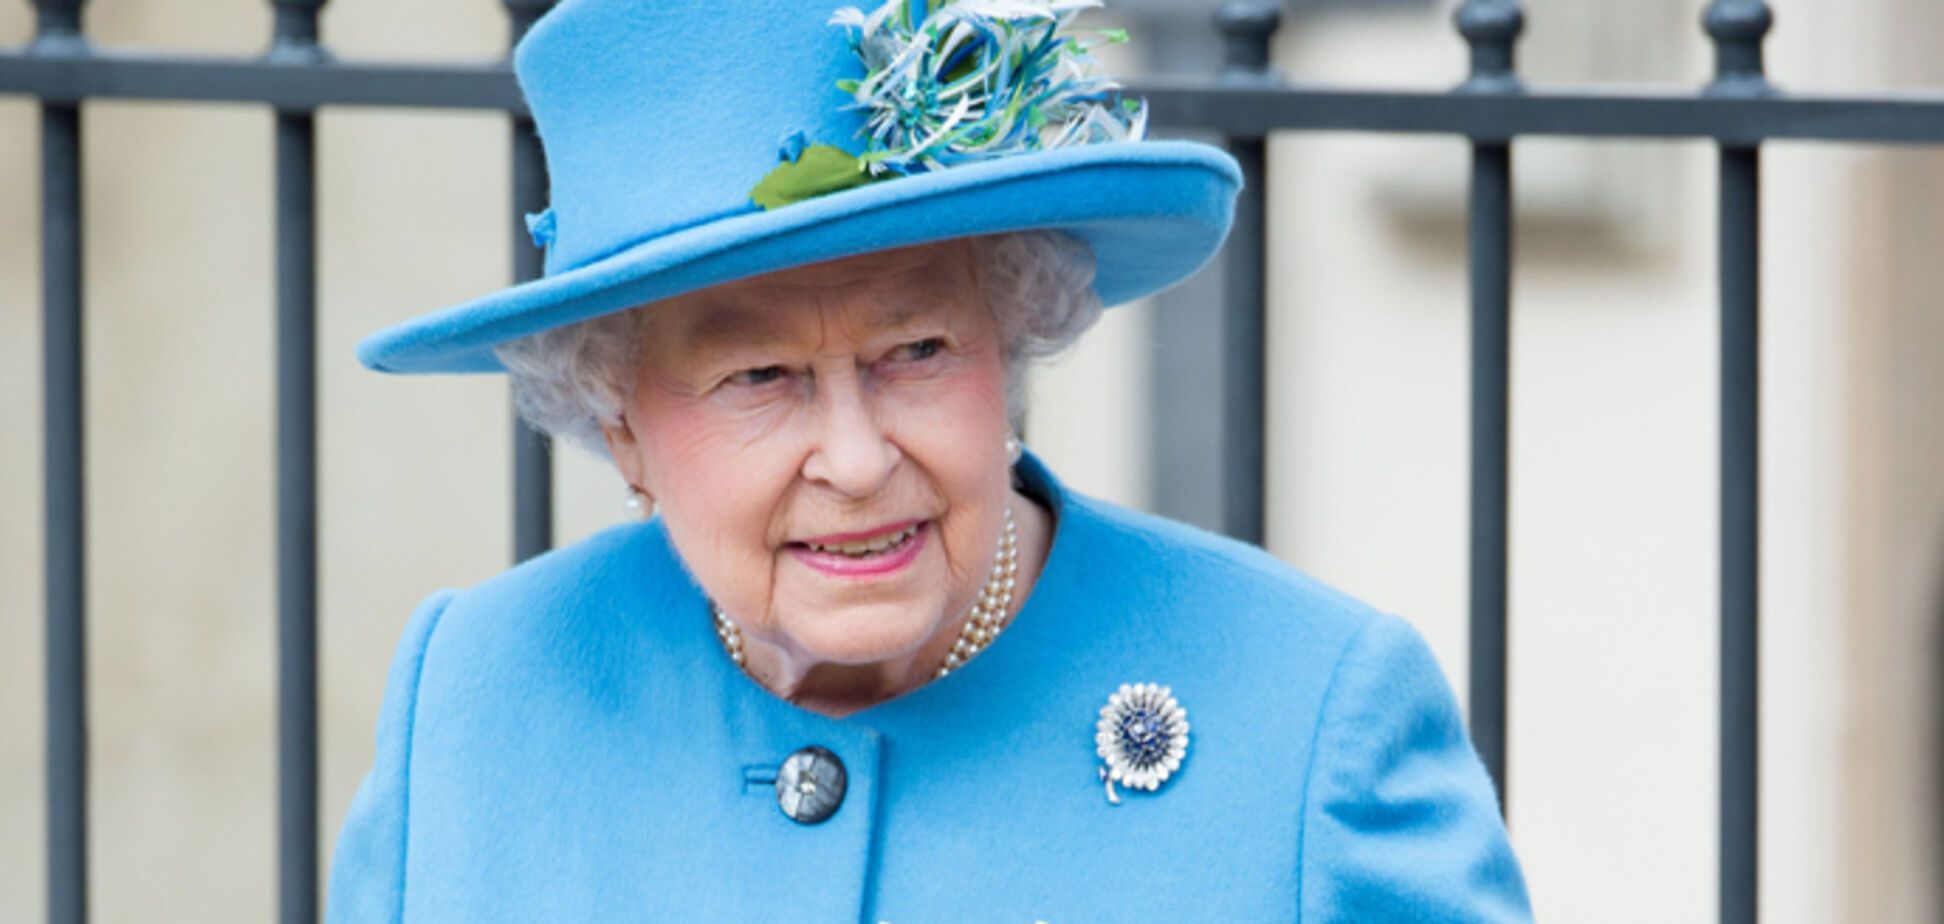 12 найяскравіших нарядів королеви Єлизавети II. Фото